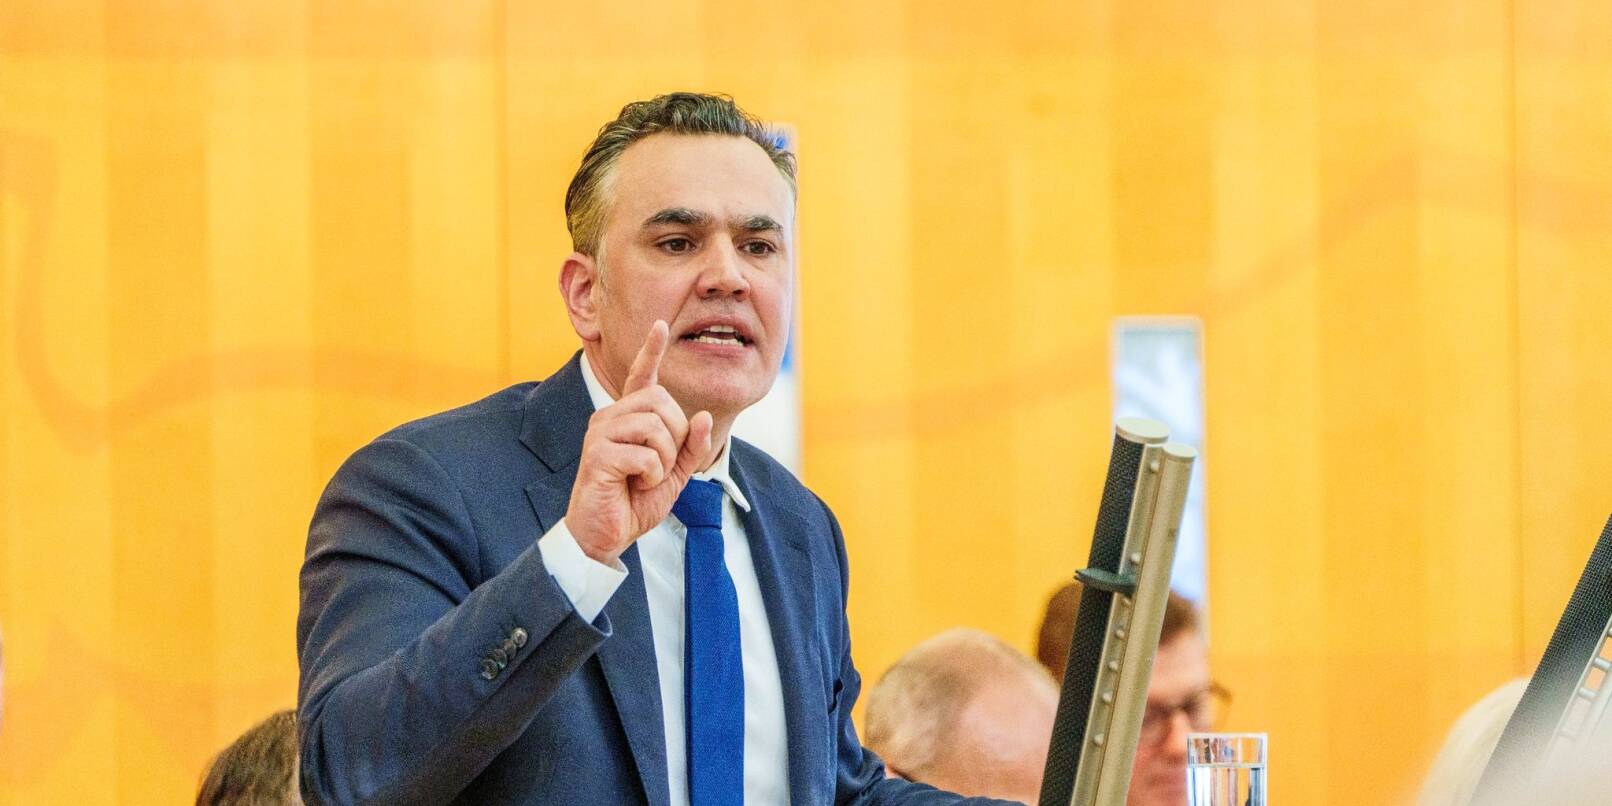 Stefan Naas (FDP), Fraktionsvorsitzender seiner Partei im Hessischen Landtag, spricht zu den Abgeordneten.